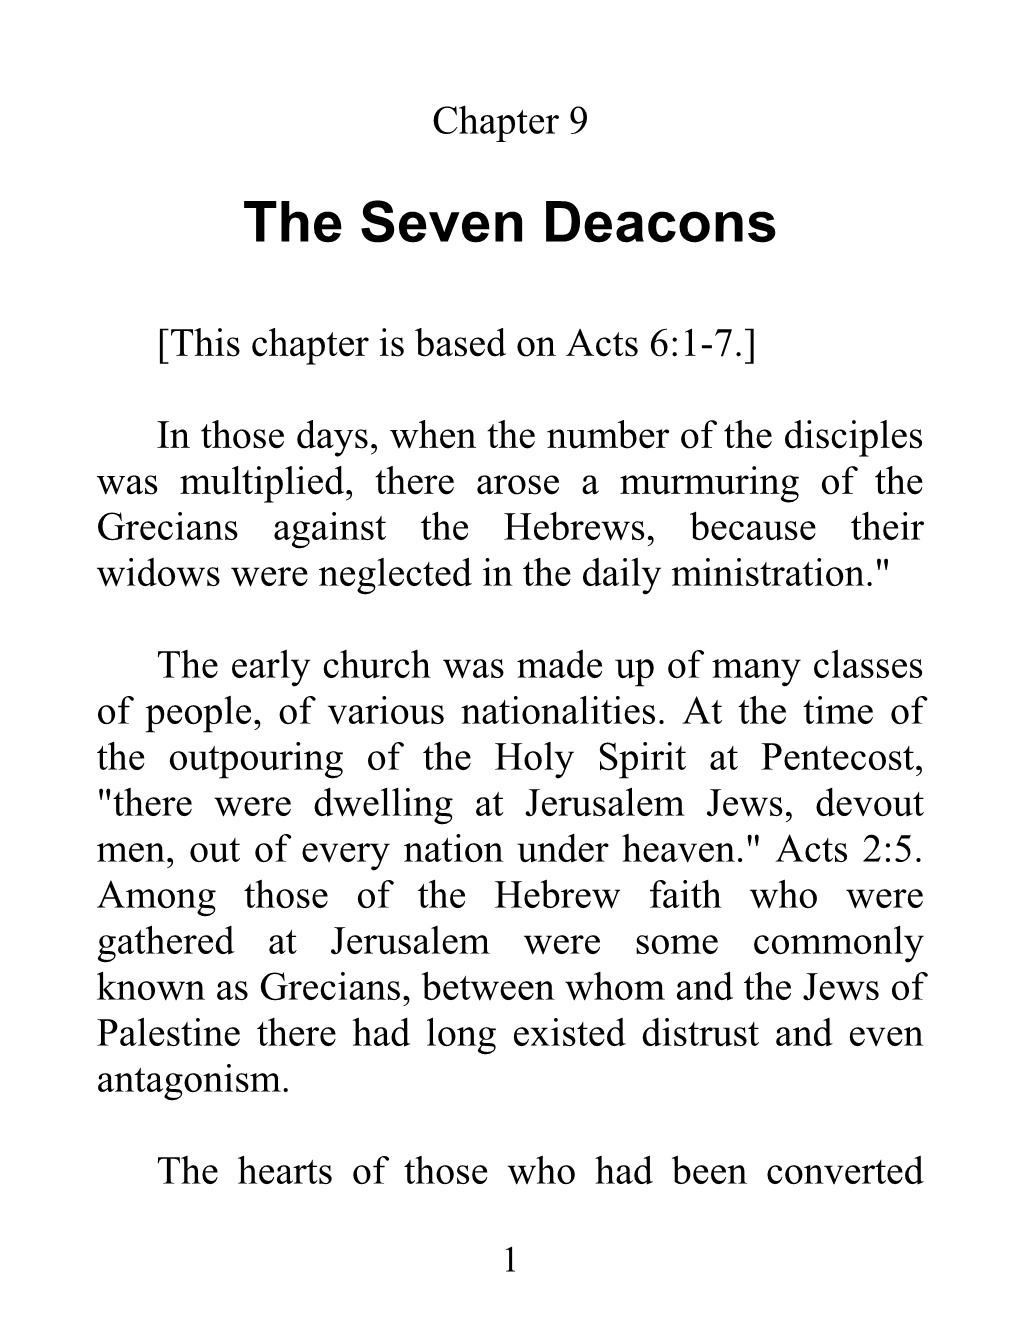 The Seven Deacons